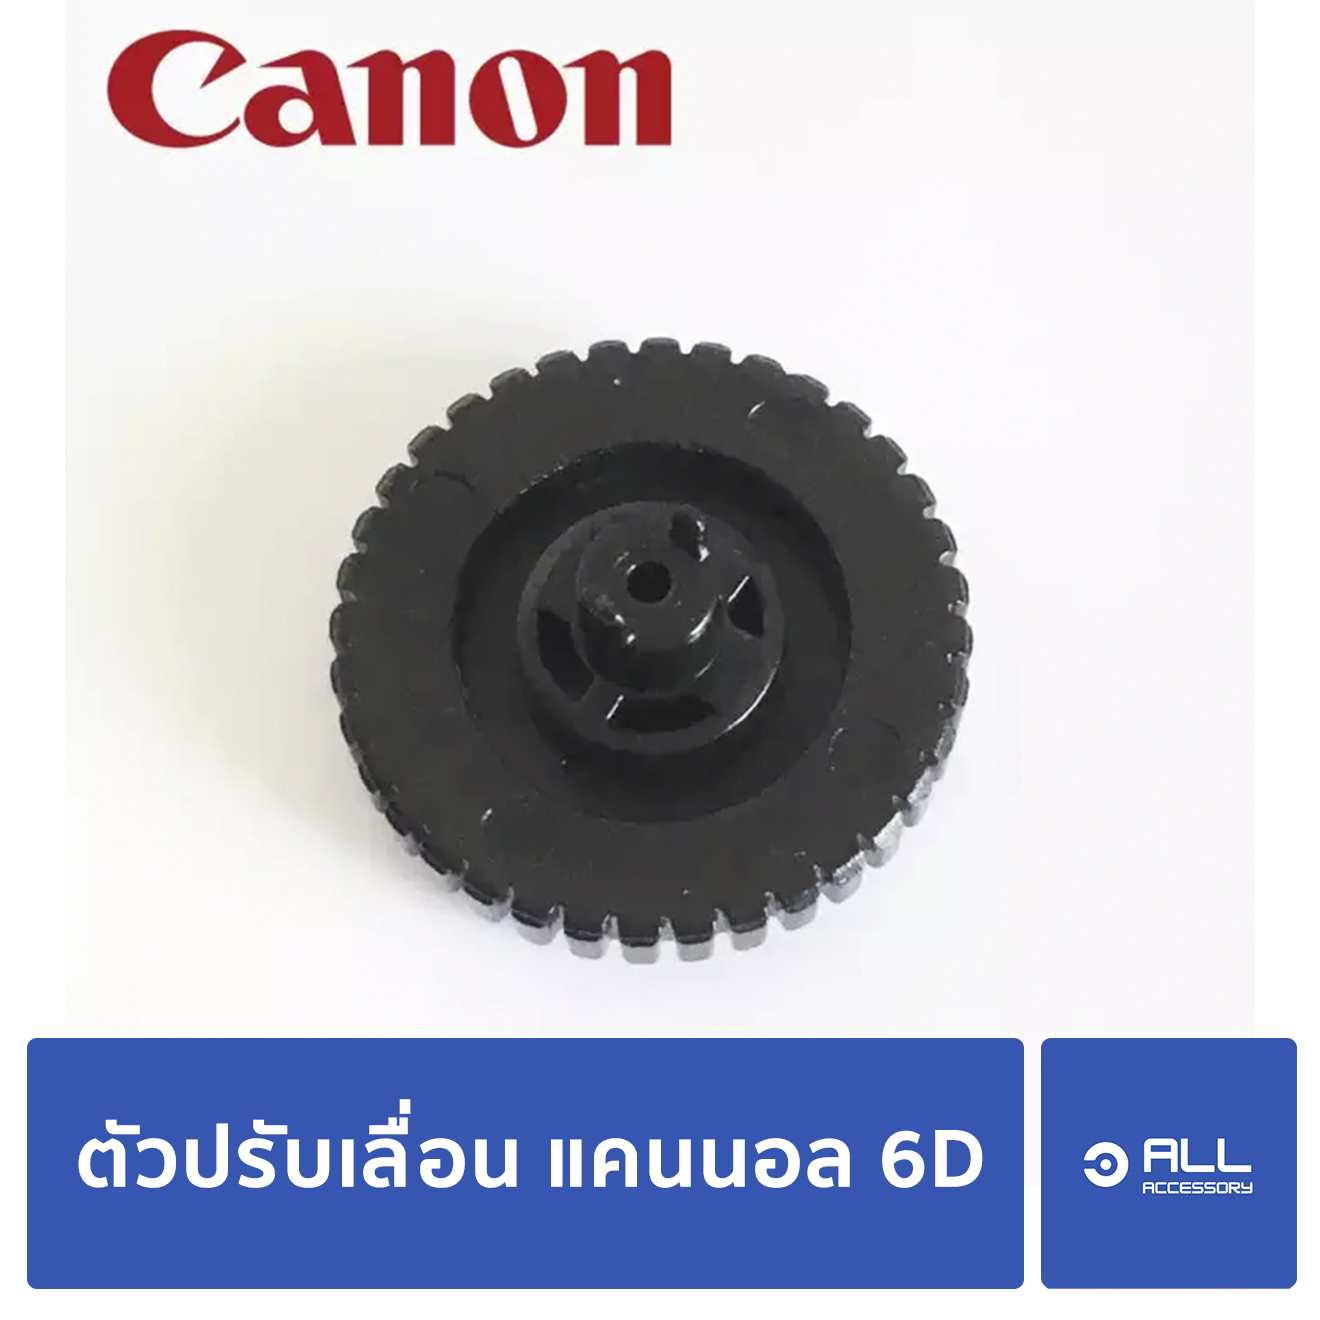 วงแหวนเลื่อน Canon EOS 6D วงล้อ แคนนอล 6D สำหรับซ่อม-เปลี่ยน (จัดส่งเคอรี่1-2วัน)